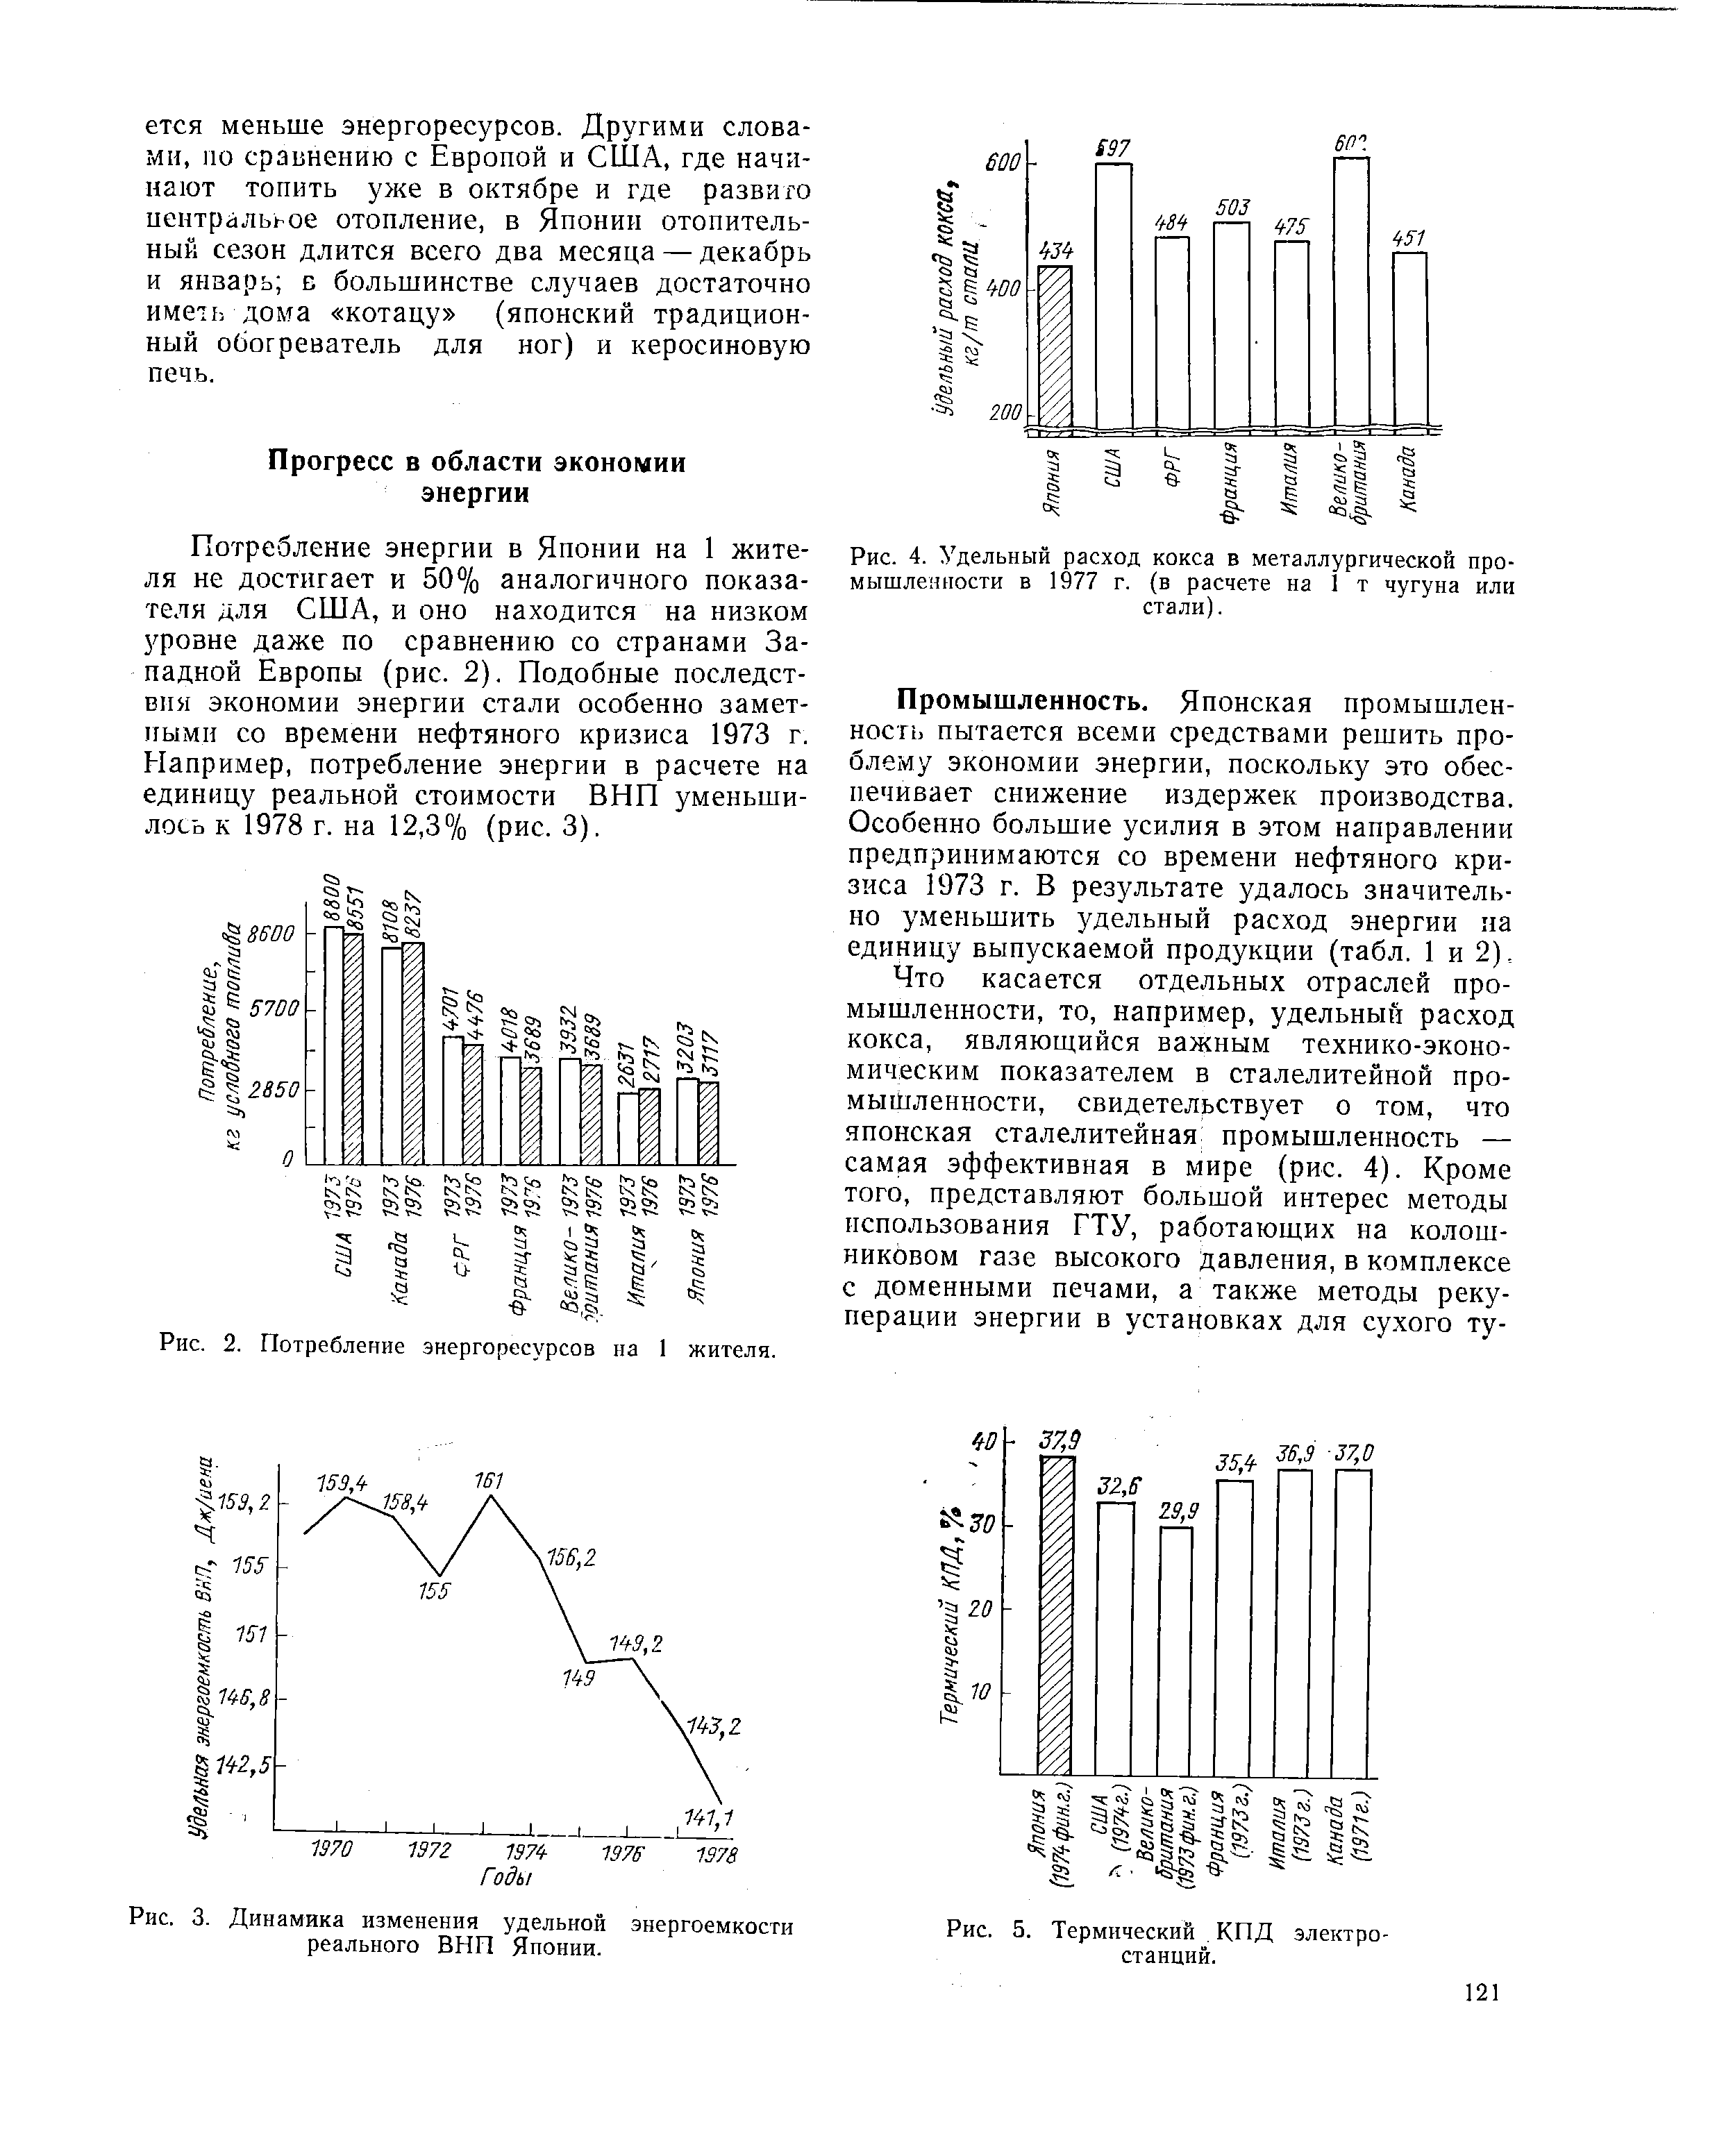 Рис. 4. <a href="/info/116415">Удельный расход кокса</a> в металлургической промышленности в 1977 г. (в расчете на 1 т чугуна или стали).
